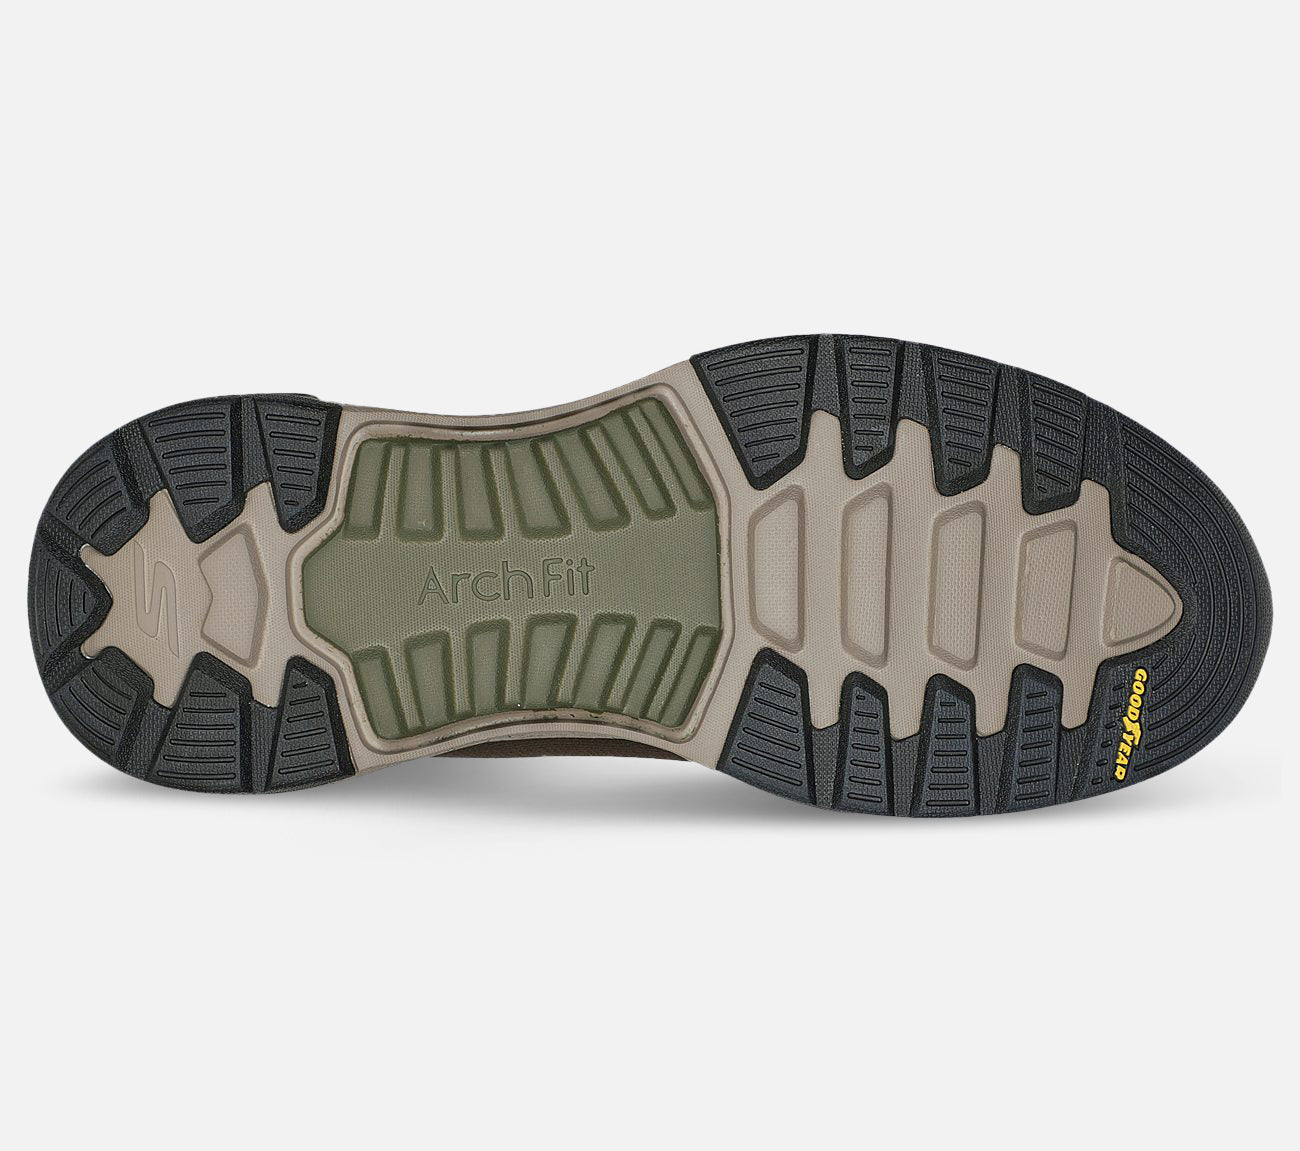 GO WALK Arch Fit Outdoor - Water Repellent Shoe Skechers